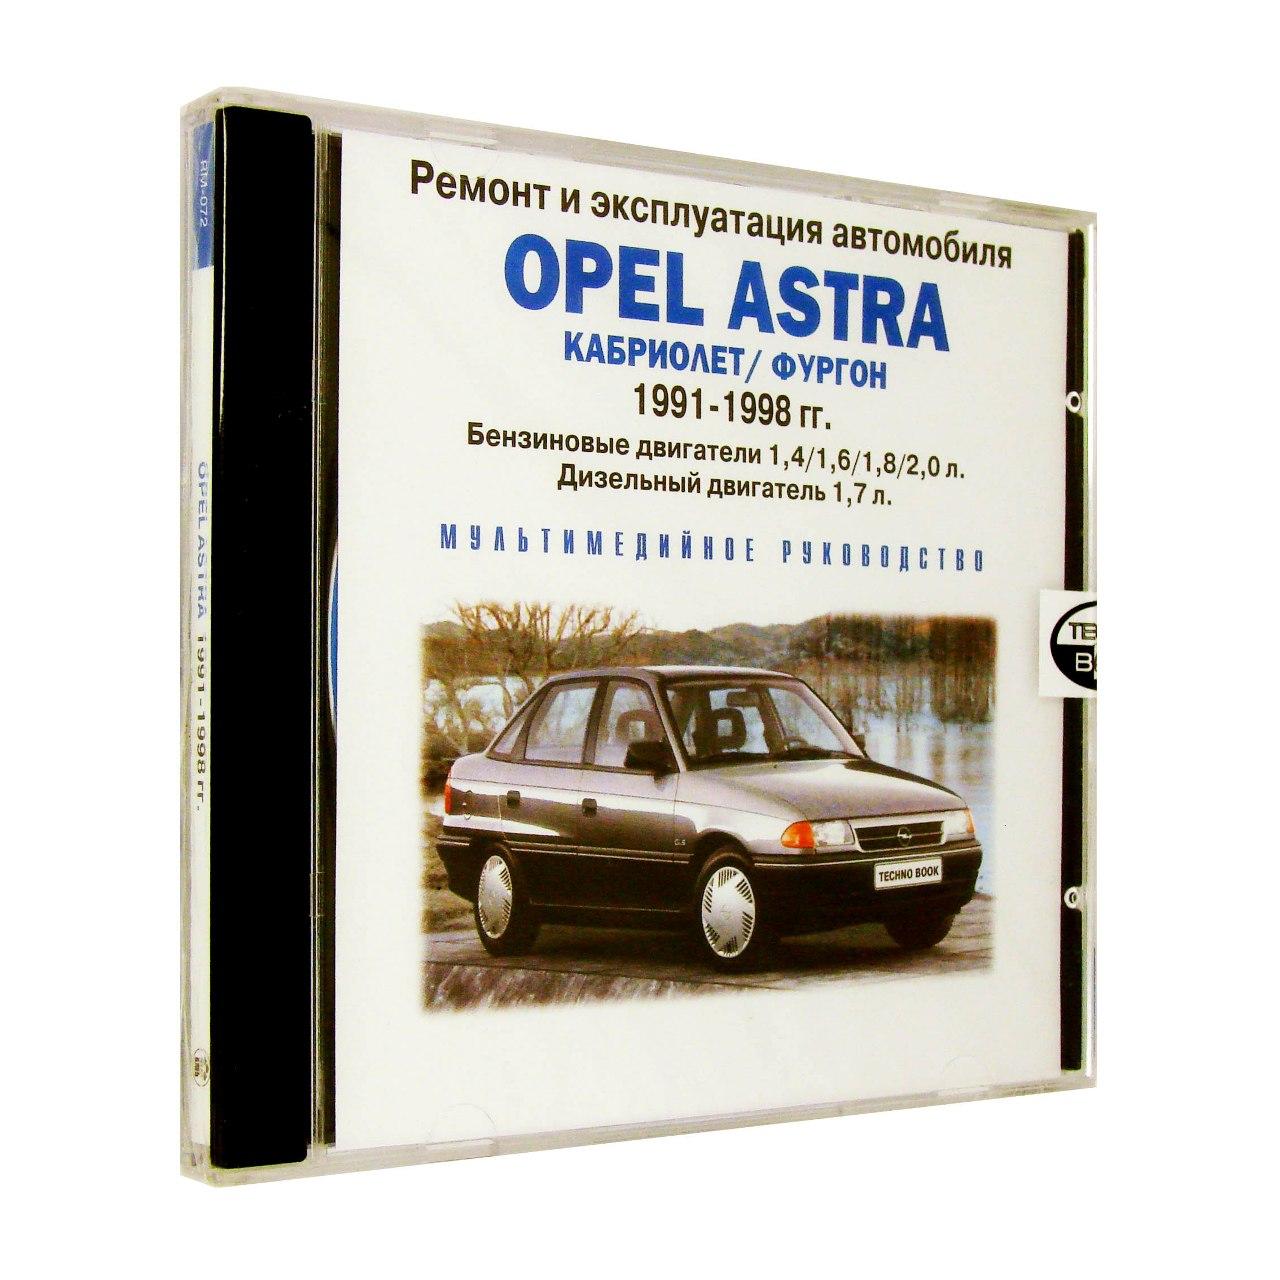 Компьютерный компакт-диск Opel Astra кабриолет/фургон 1991-1998 гг.: ремонт и эксплуатация автомобиля (ПК), фирма RMG Multimedia, 1CD